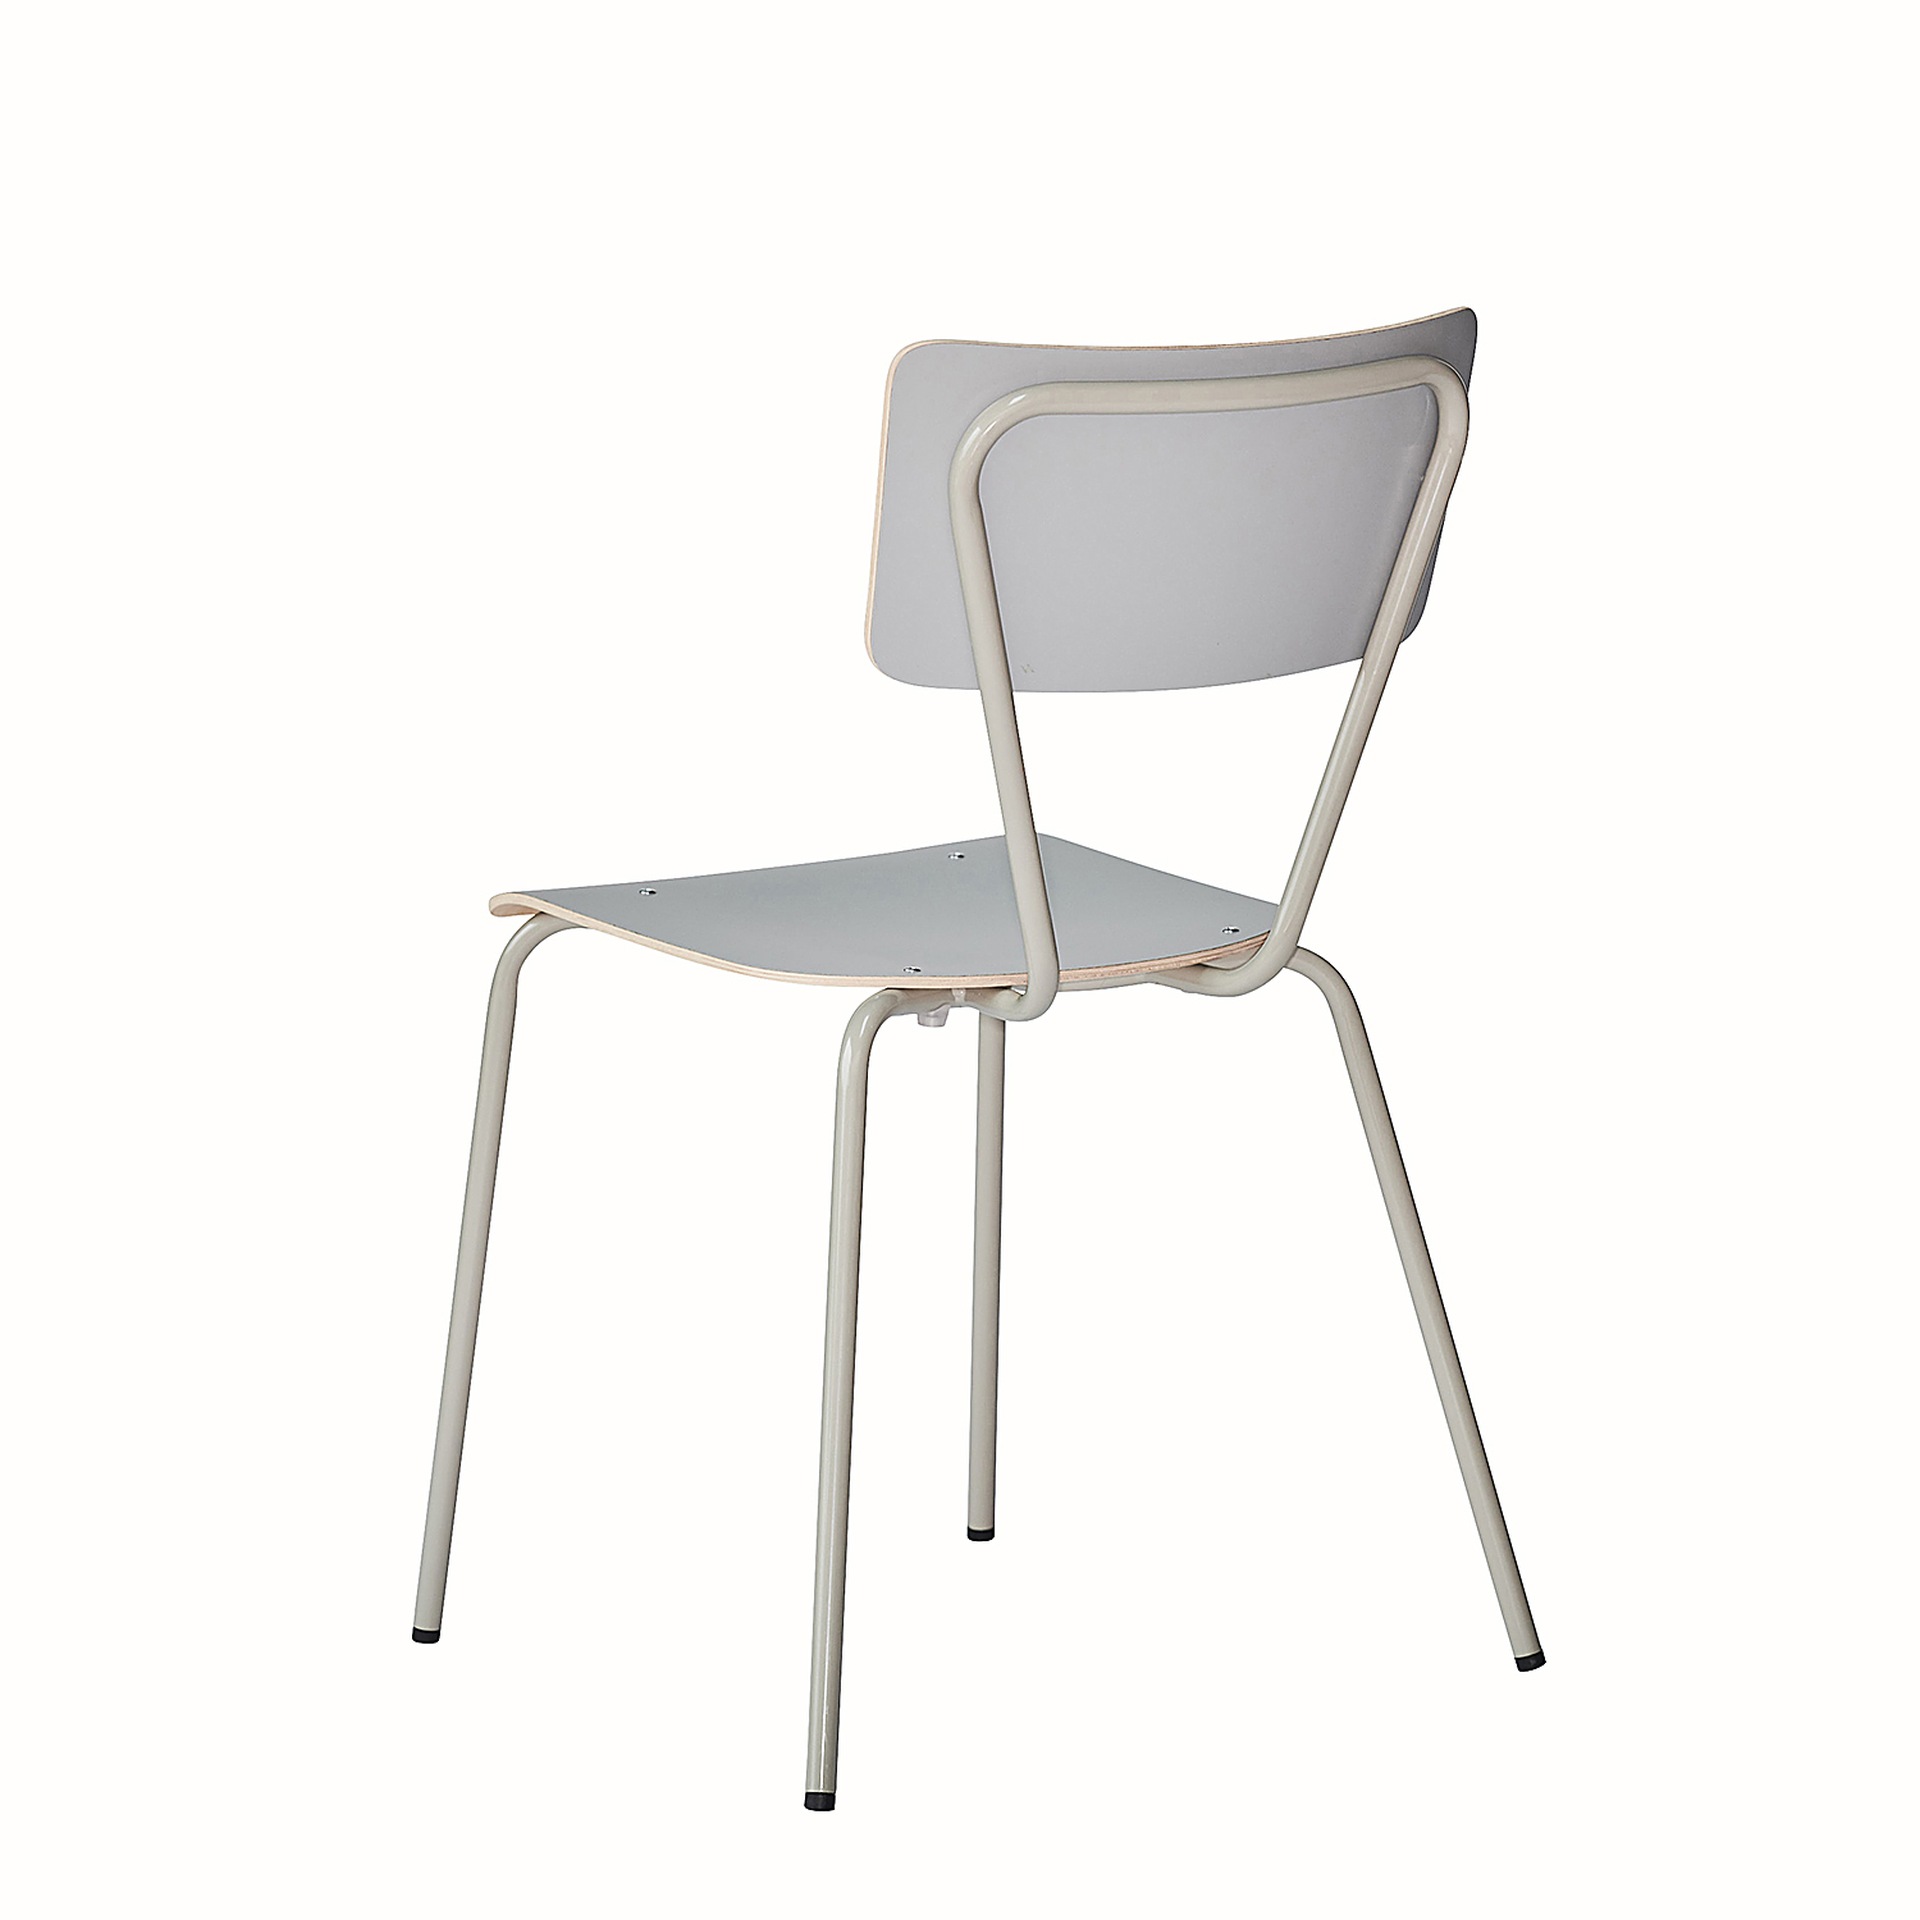 Der schlichte Stuhl Clio wurde aus Metall gefertigt und besitzt eine Taupe Farbe. Er ist eine Produkt der Marke Jan Kurtz.